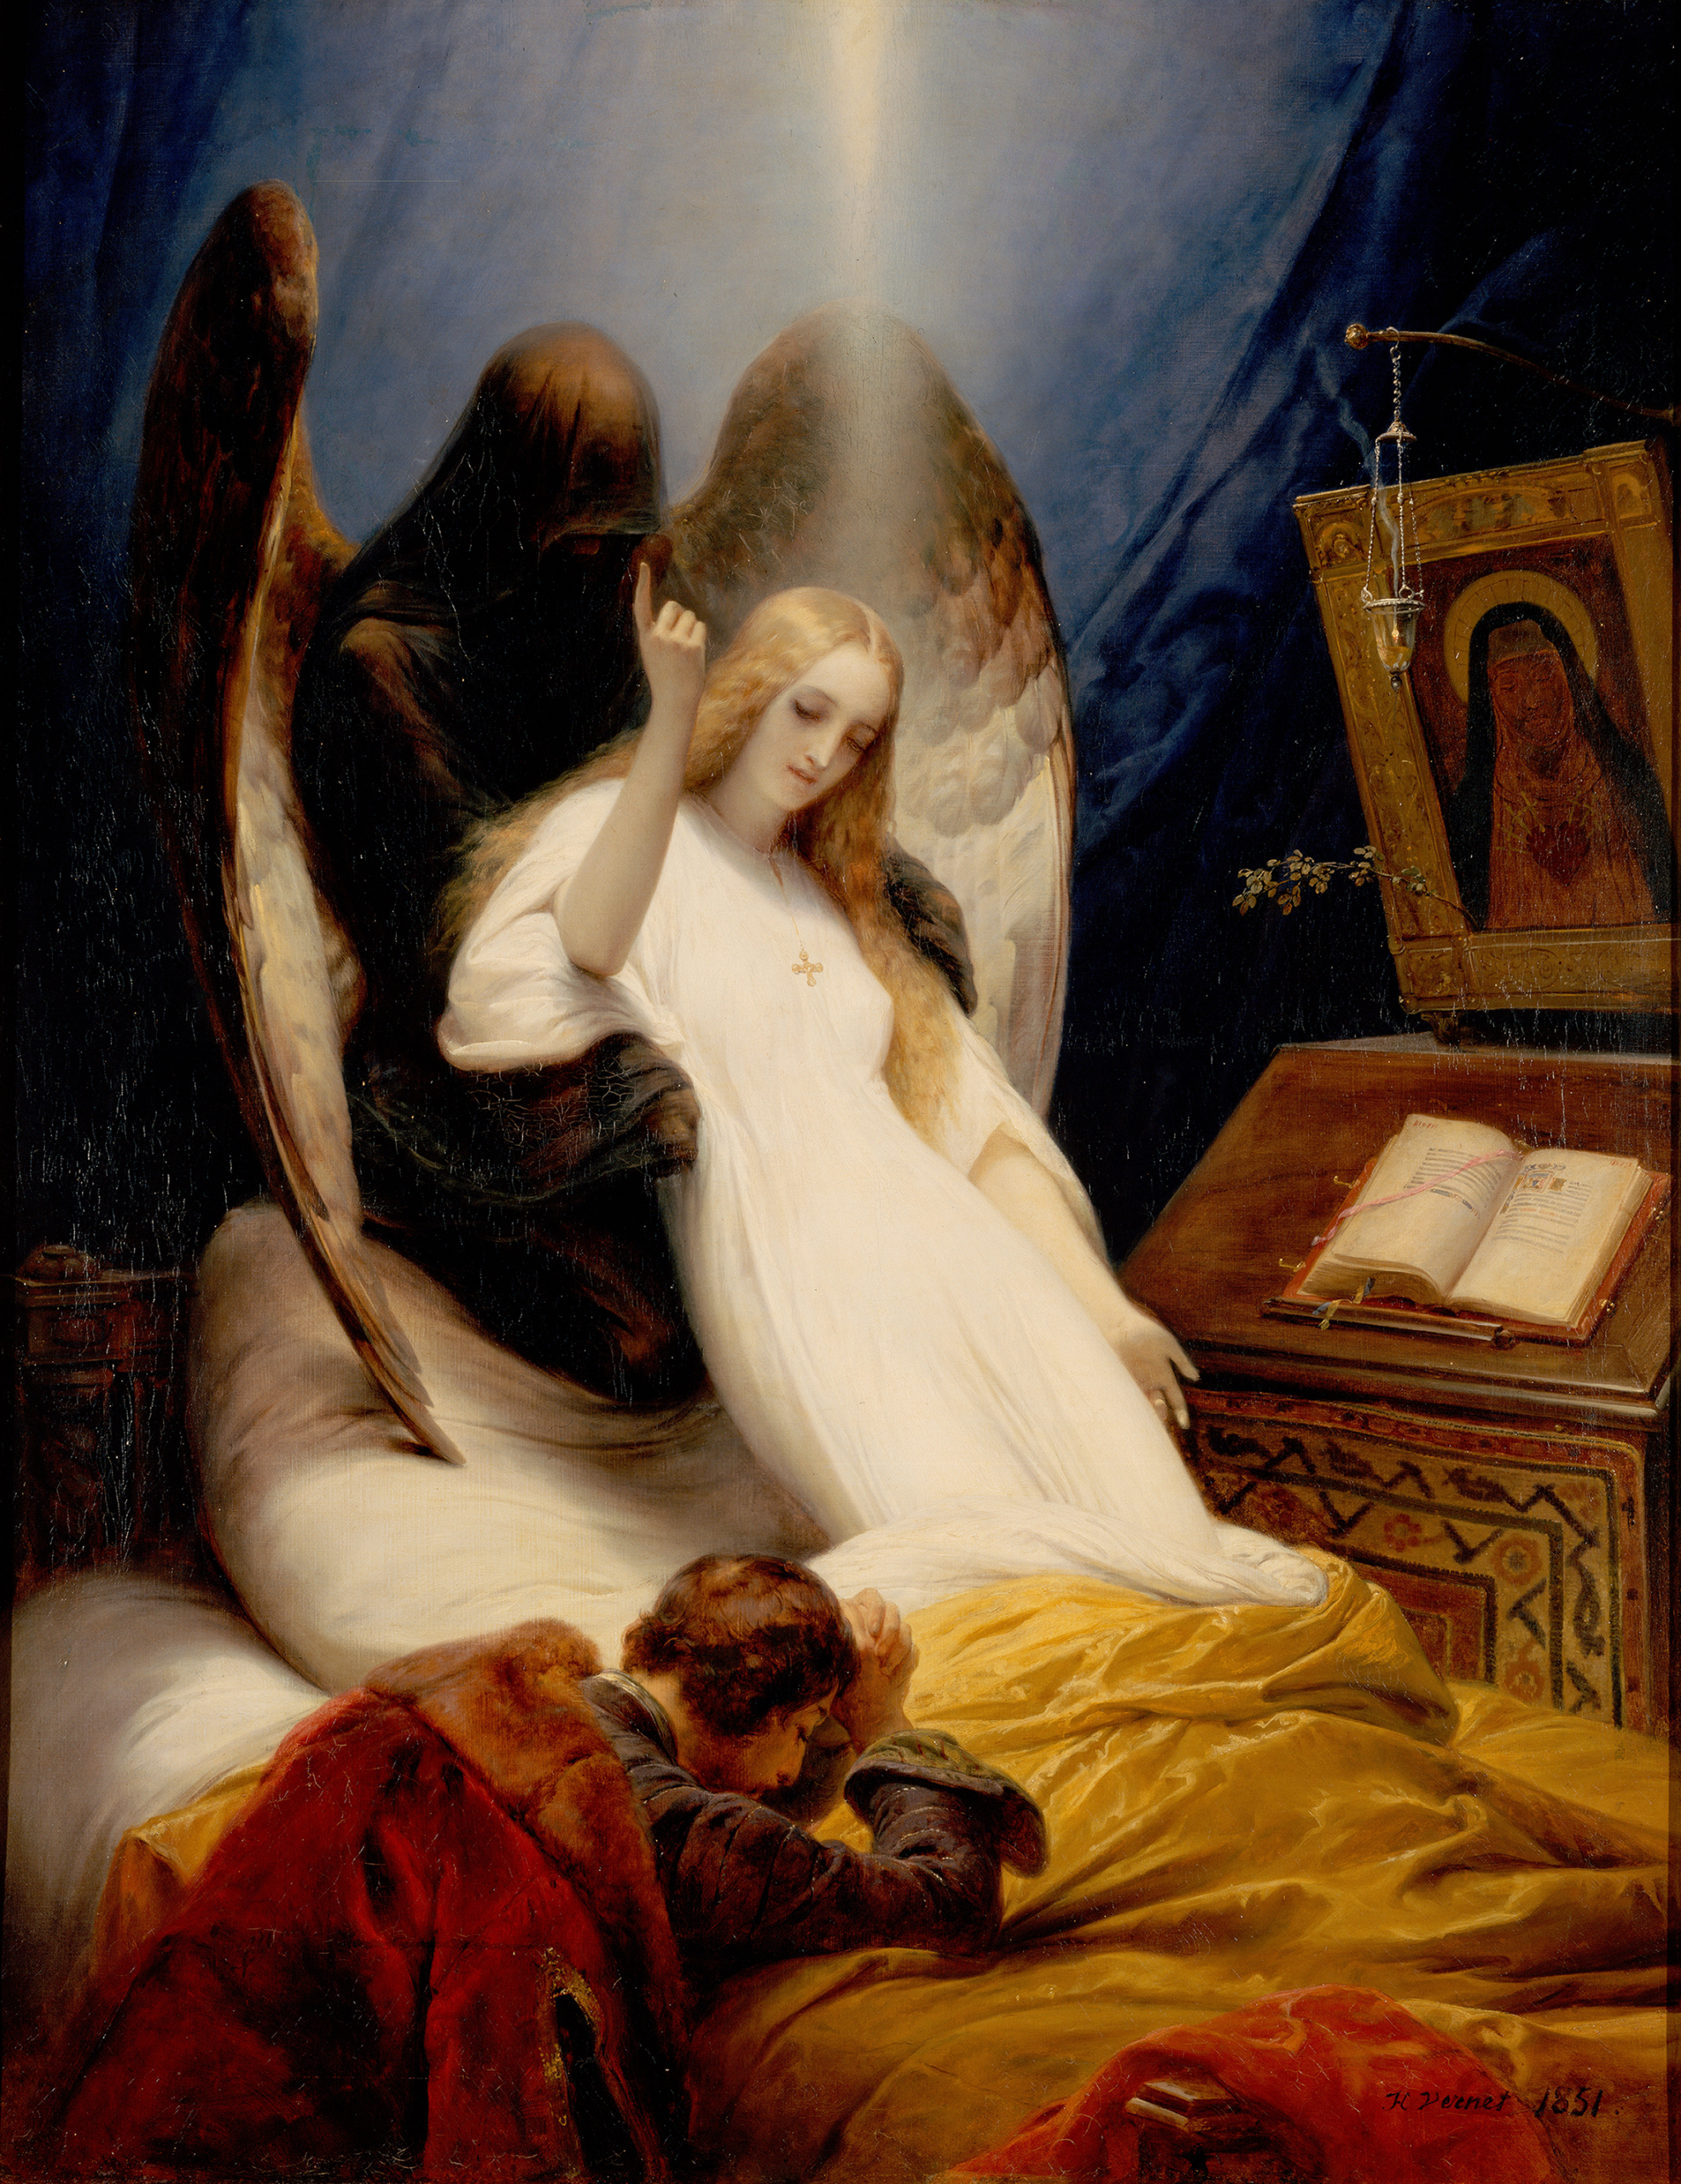 Bức tranh “The Angel of Death” (Sứ Giả của Cái Chết), năm 1851, của họa sĩ Horace Vernet. Sơn dầu trên vải canvas. Bảo tàng Hermitage, thành phố St. Petersburg, Nga. (Ảnh: Tư liệu công cộng)